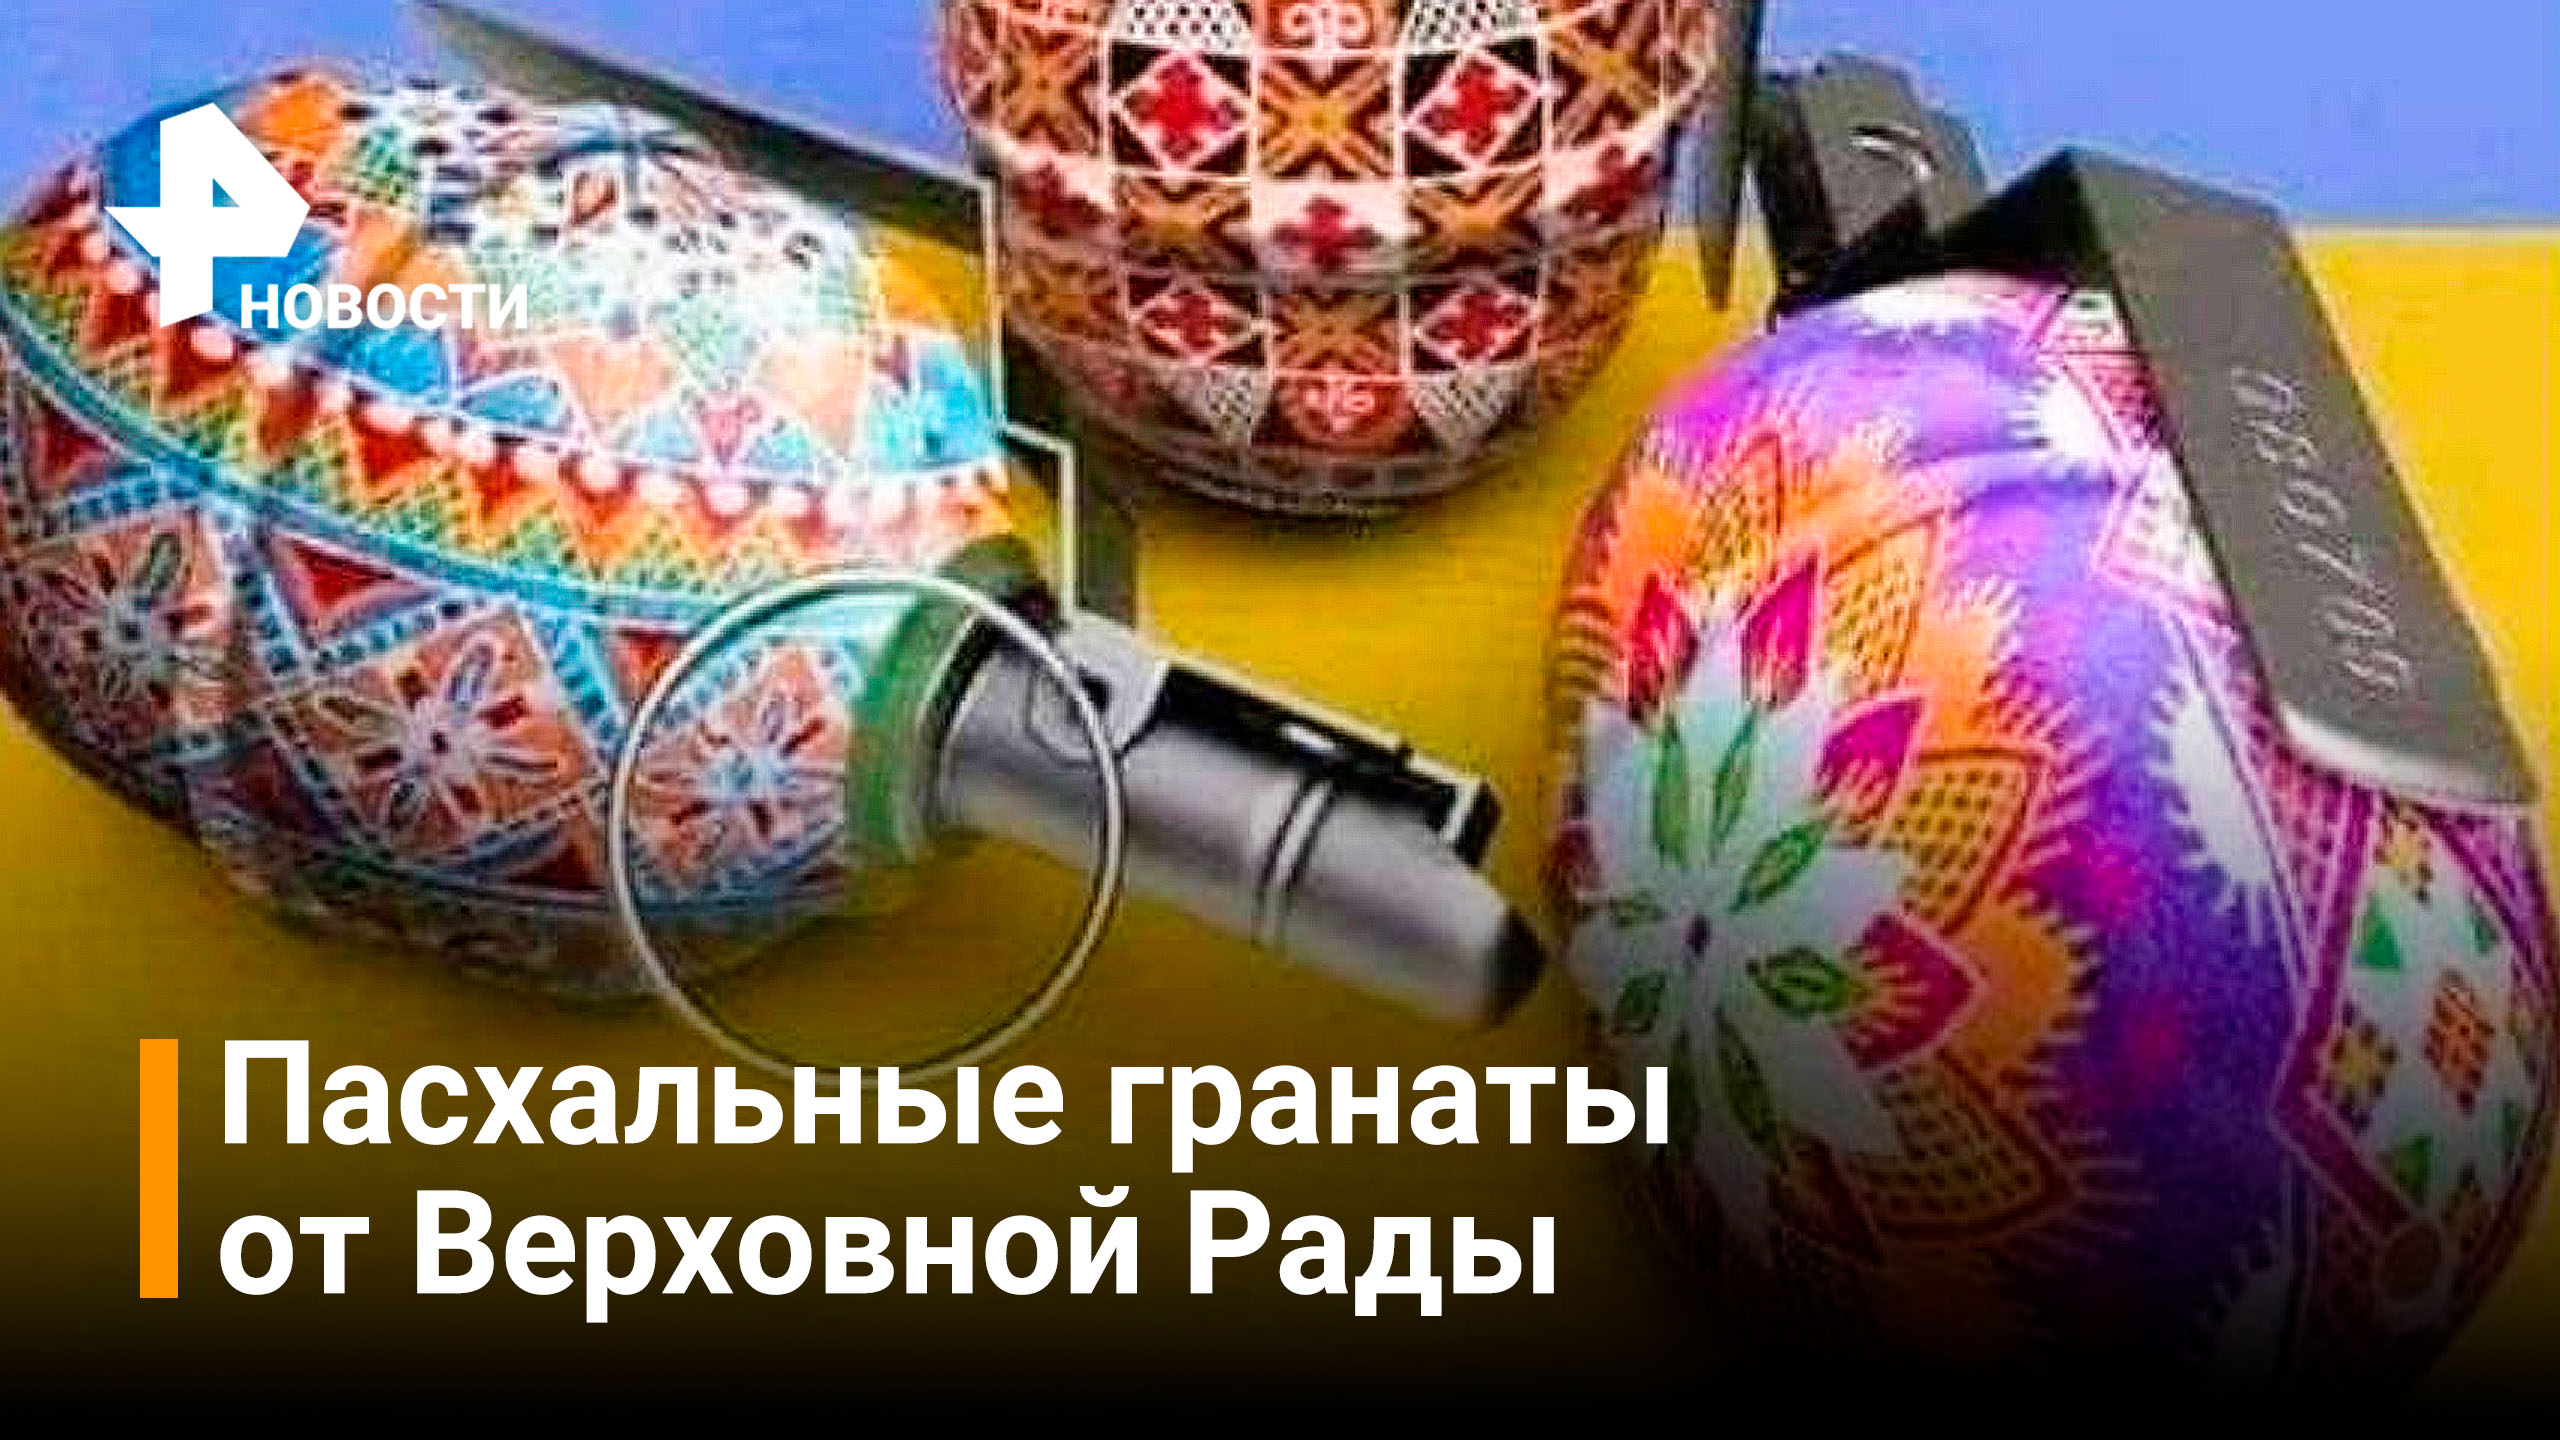 Вместо куличей - гранаты: поздравление с Пасхой от Верховной Рады / РЕН Новости